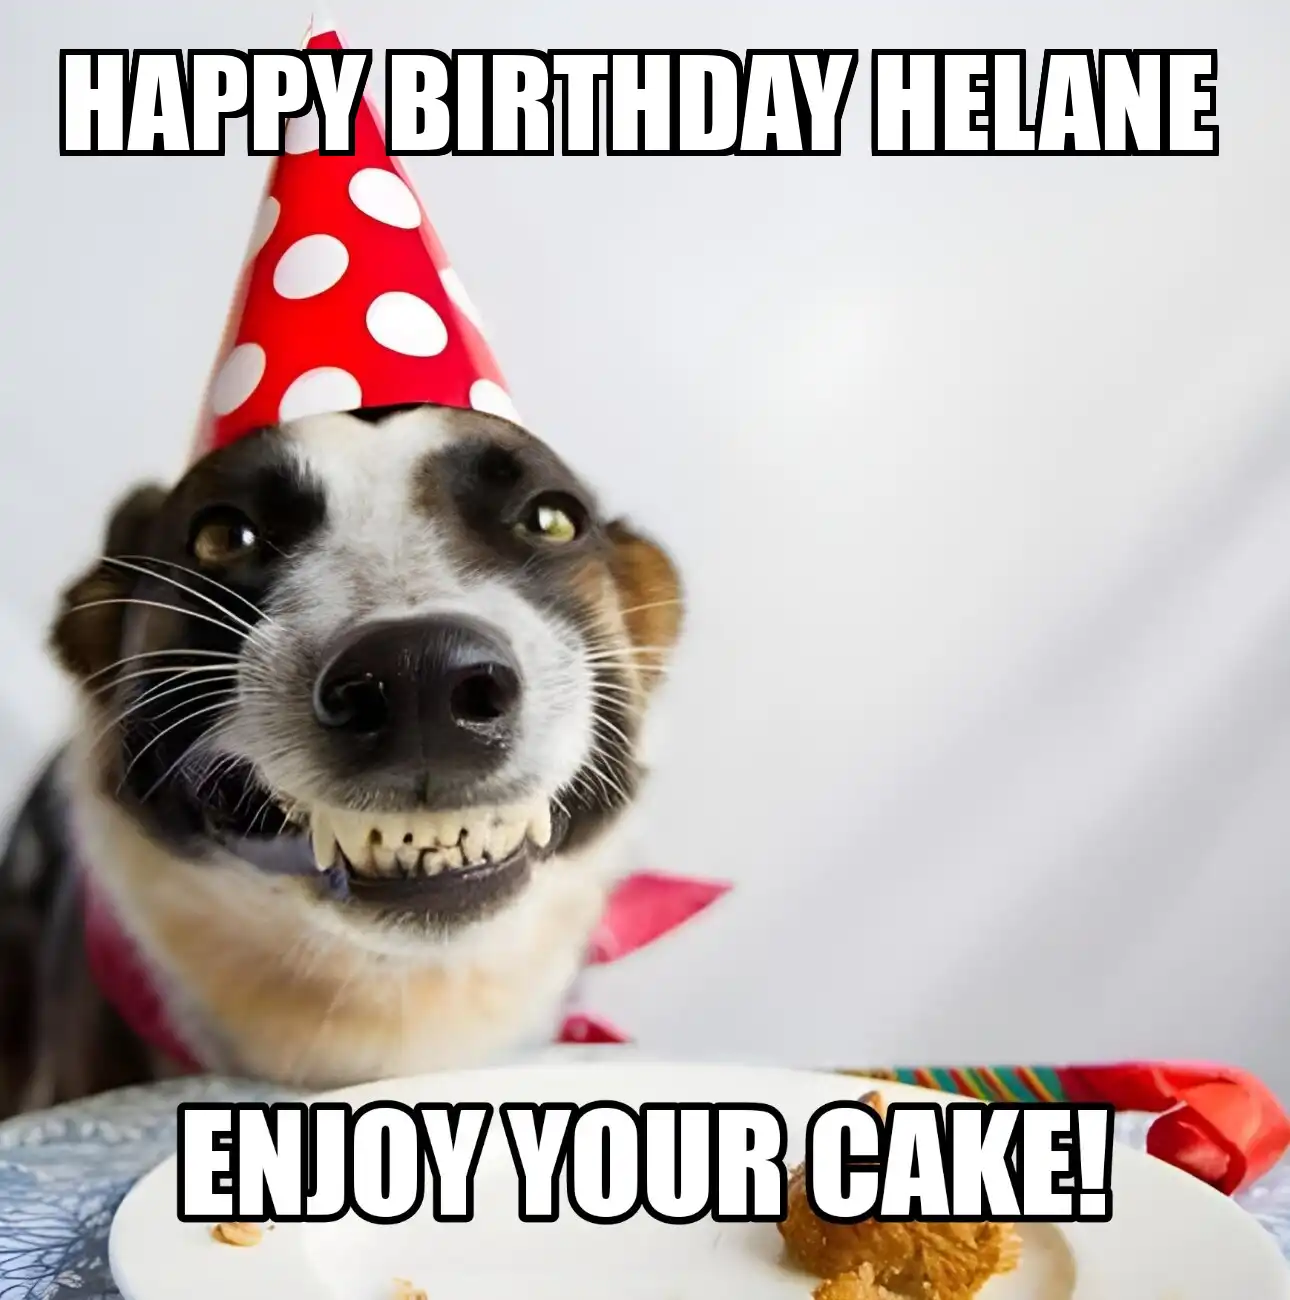 Happy Birthday Helane Enjoy Your Cake Dog Meme